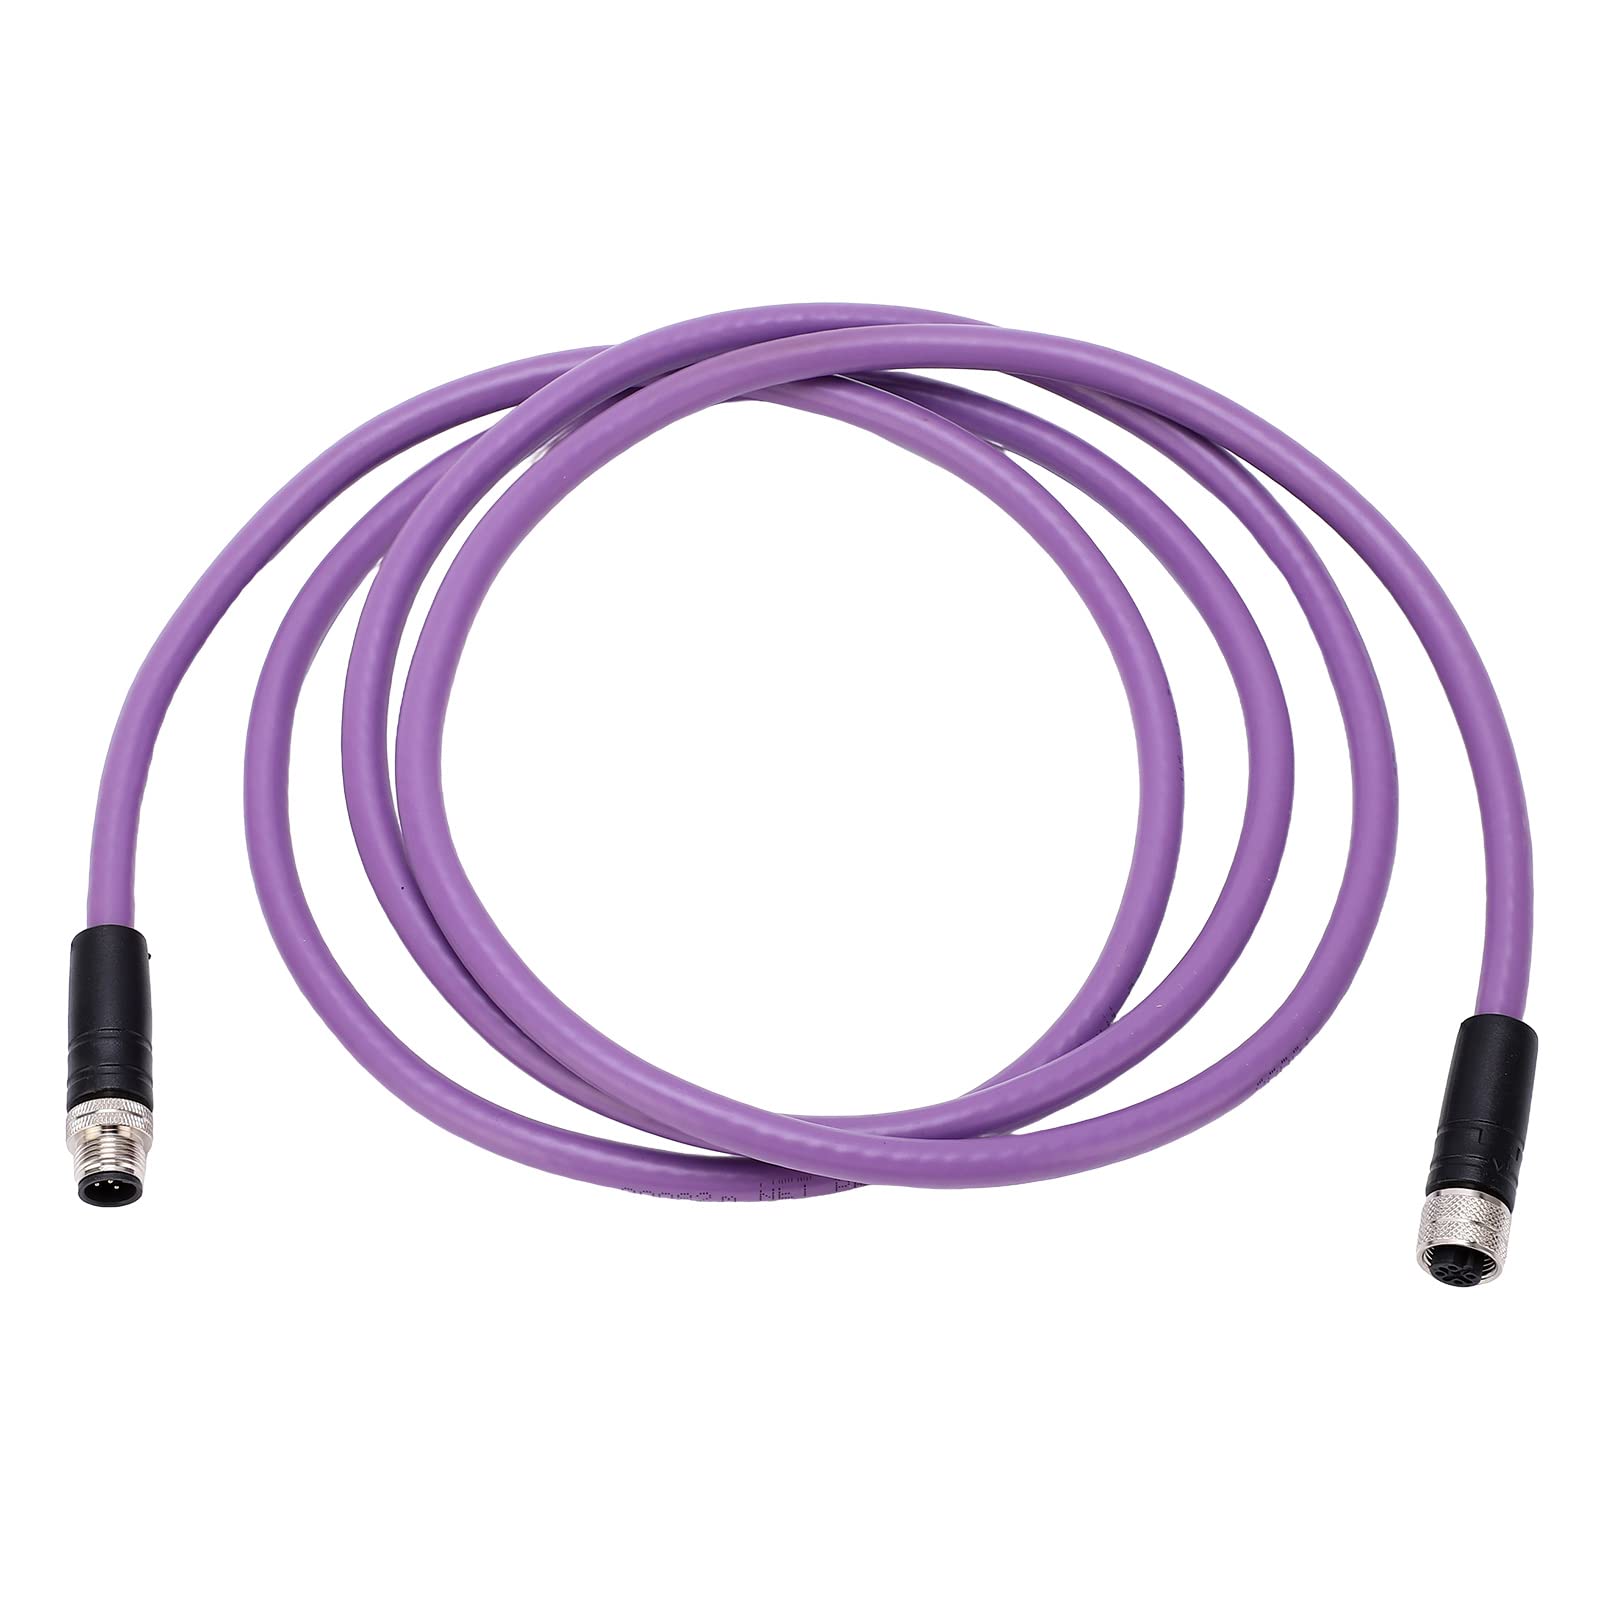 Backbone-Kabel, 2m / 6.6ft 2m Backbone-Drop-Kabel für NMEA 2000 IP68 Wasserdichter Ordnungsgemäßer Abschluss ABS + Metall für Lowrance Networks von Akozon